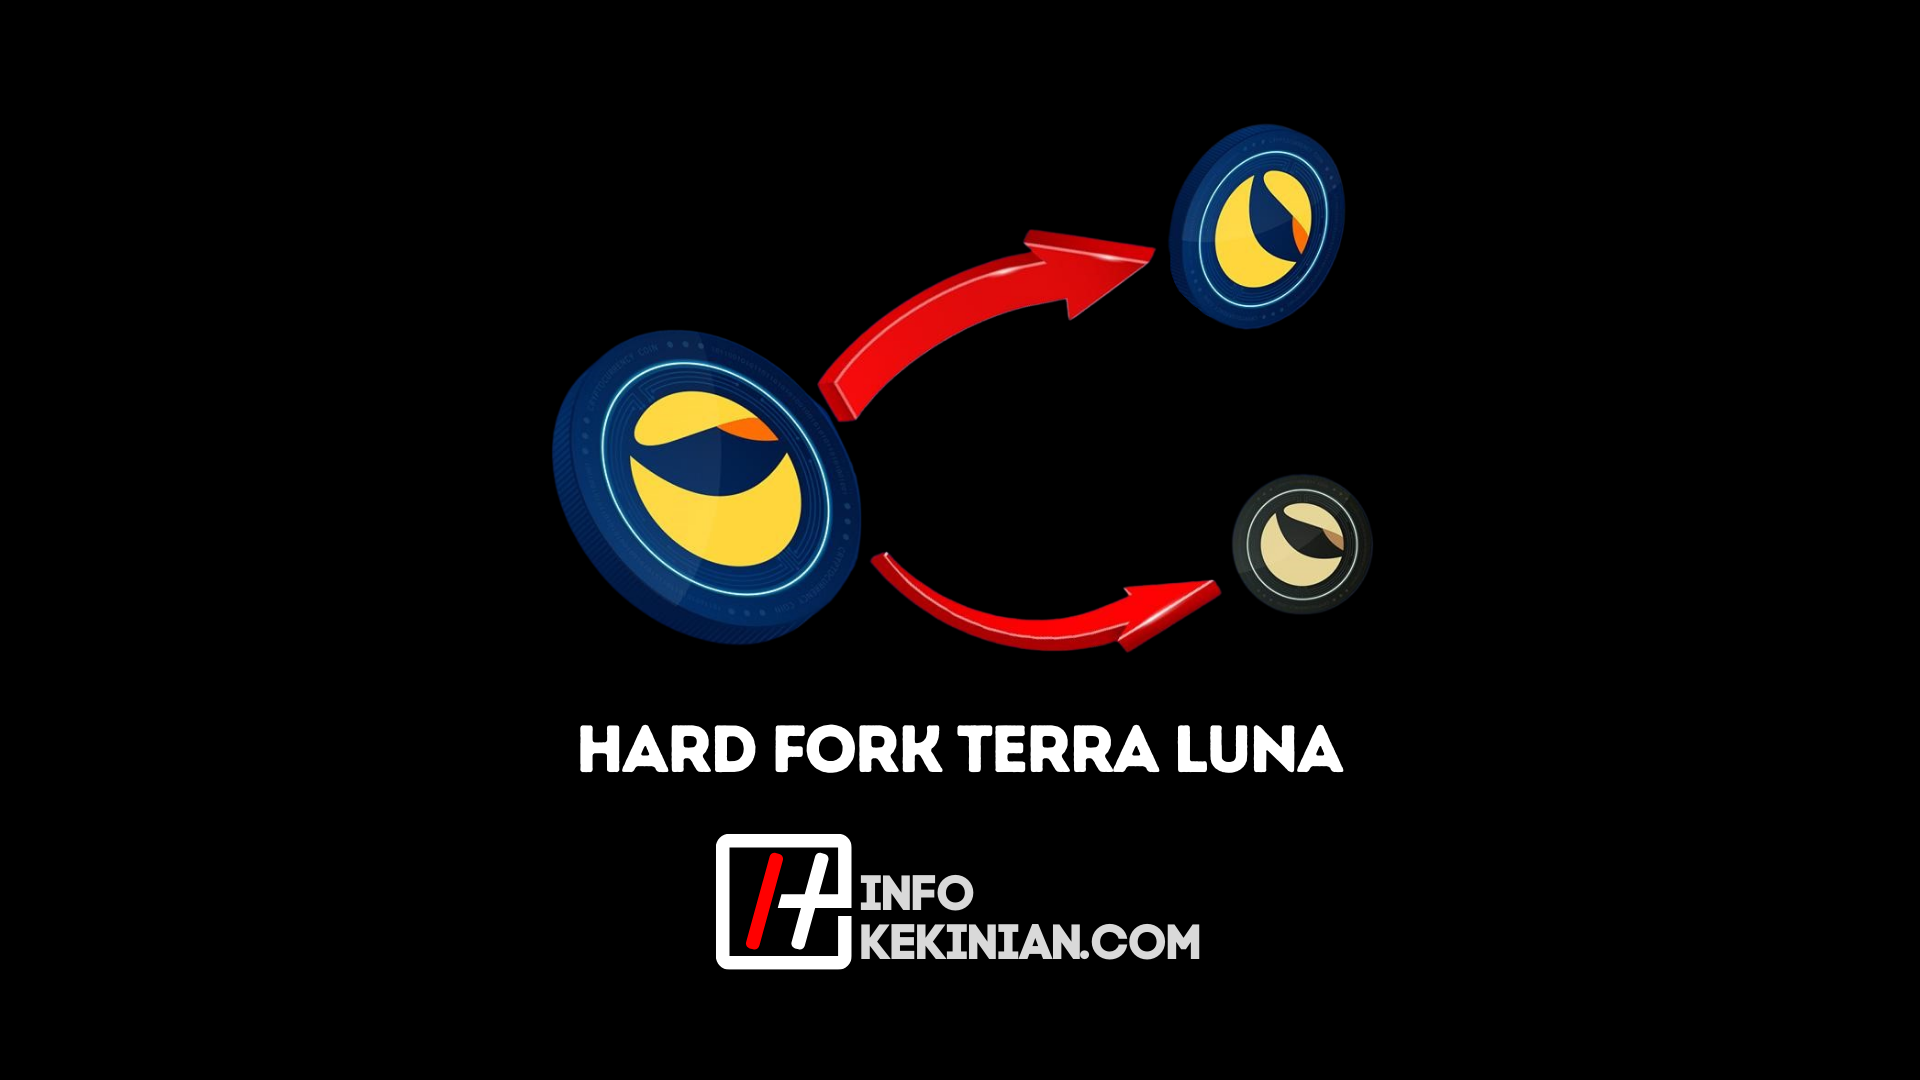 Akankah Hard Fork Terra Luna Menembus_